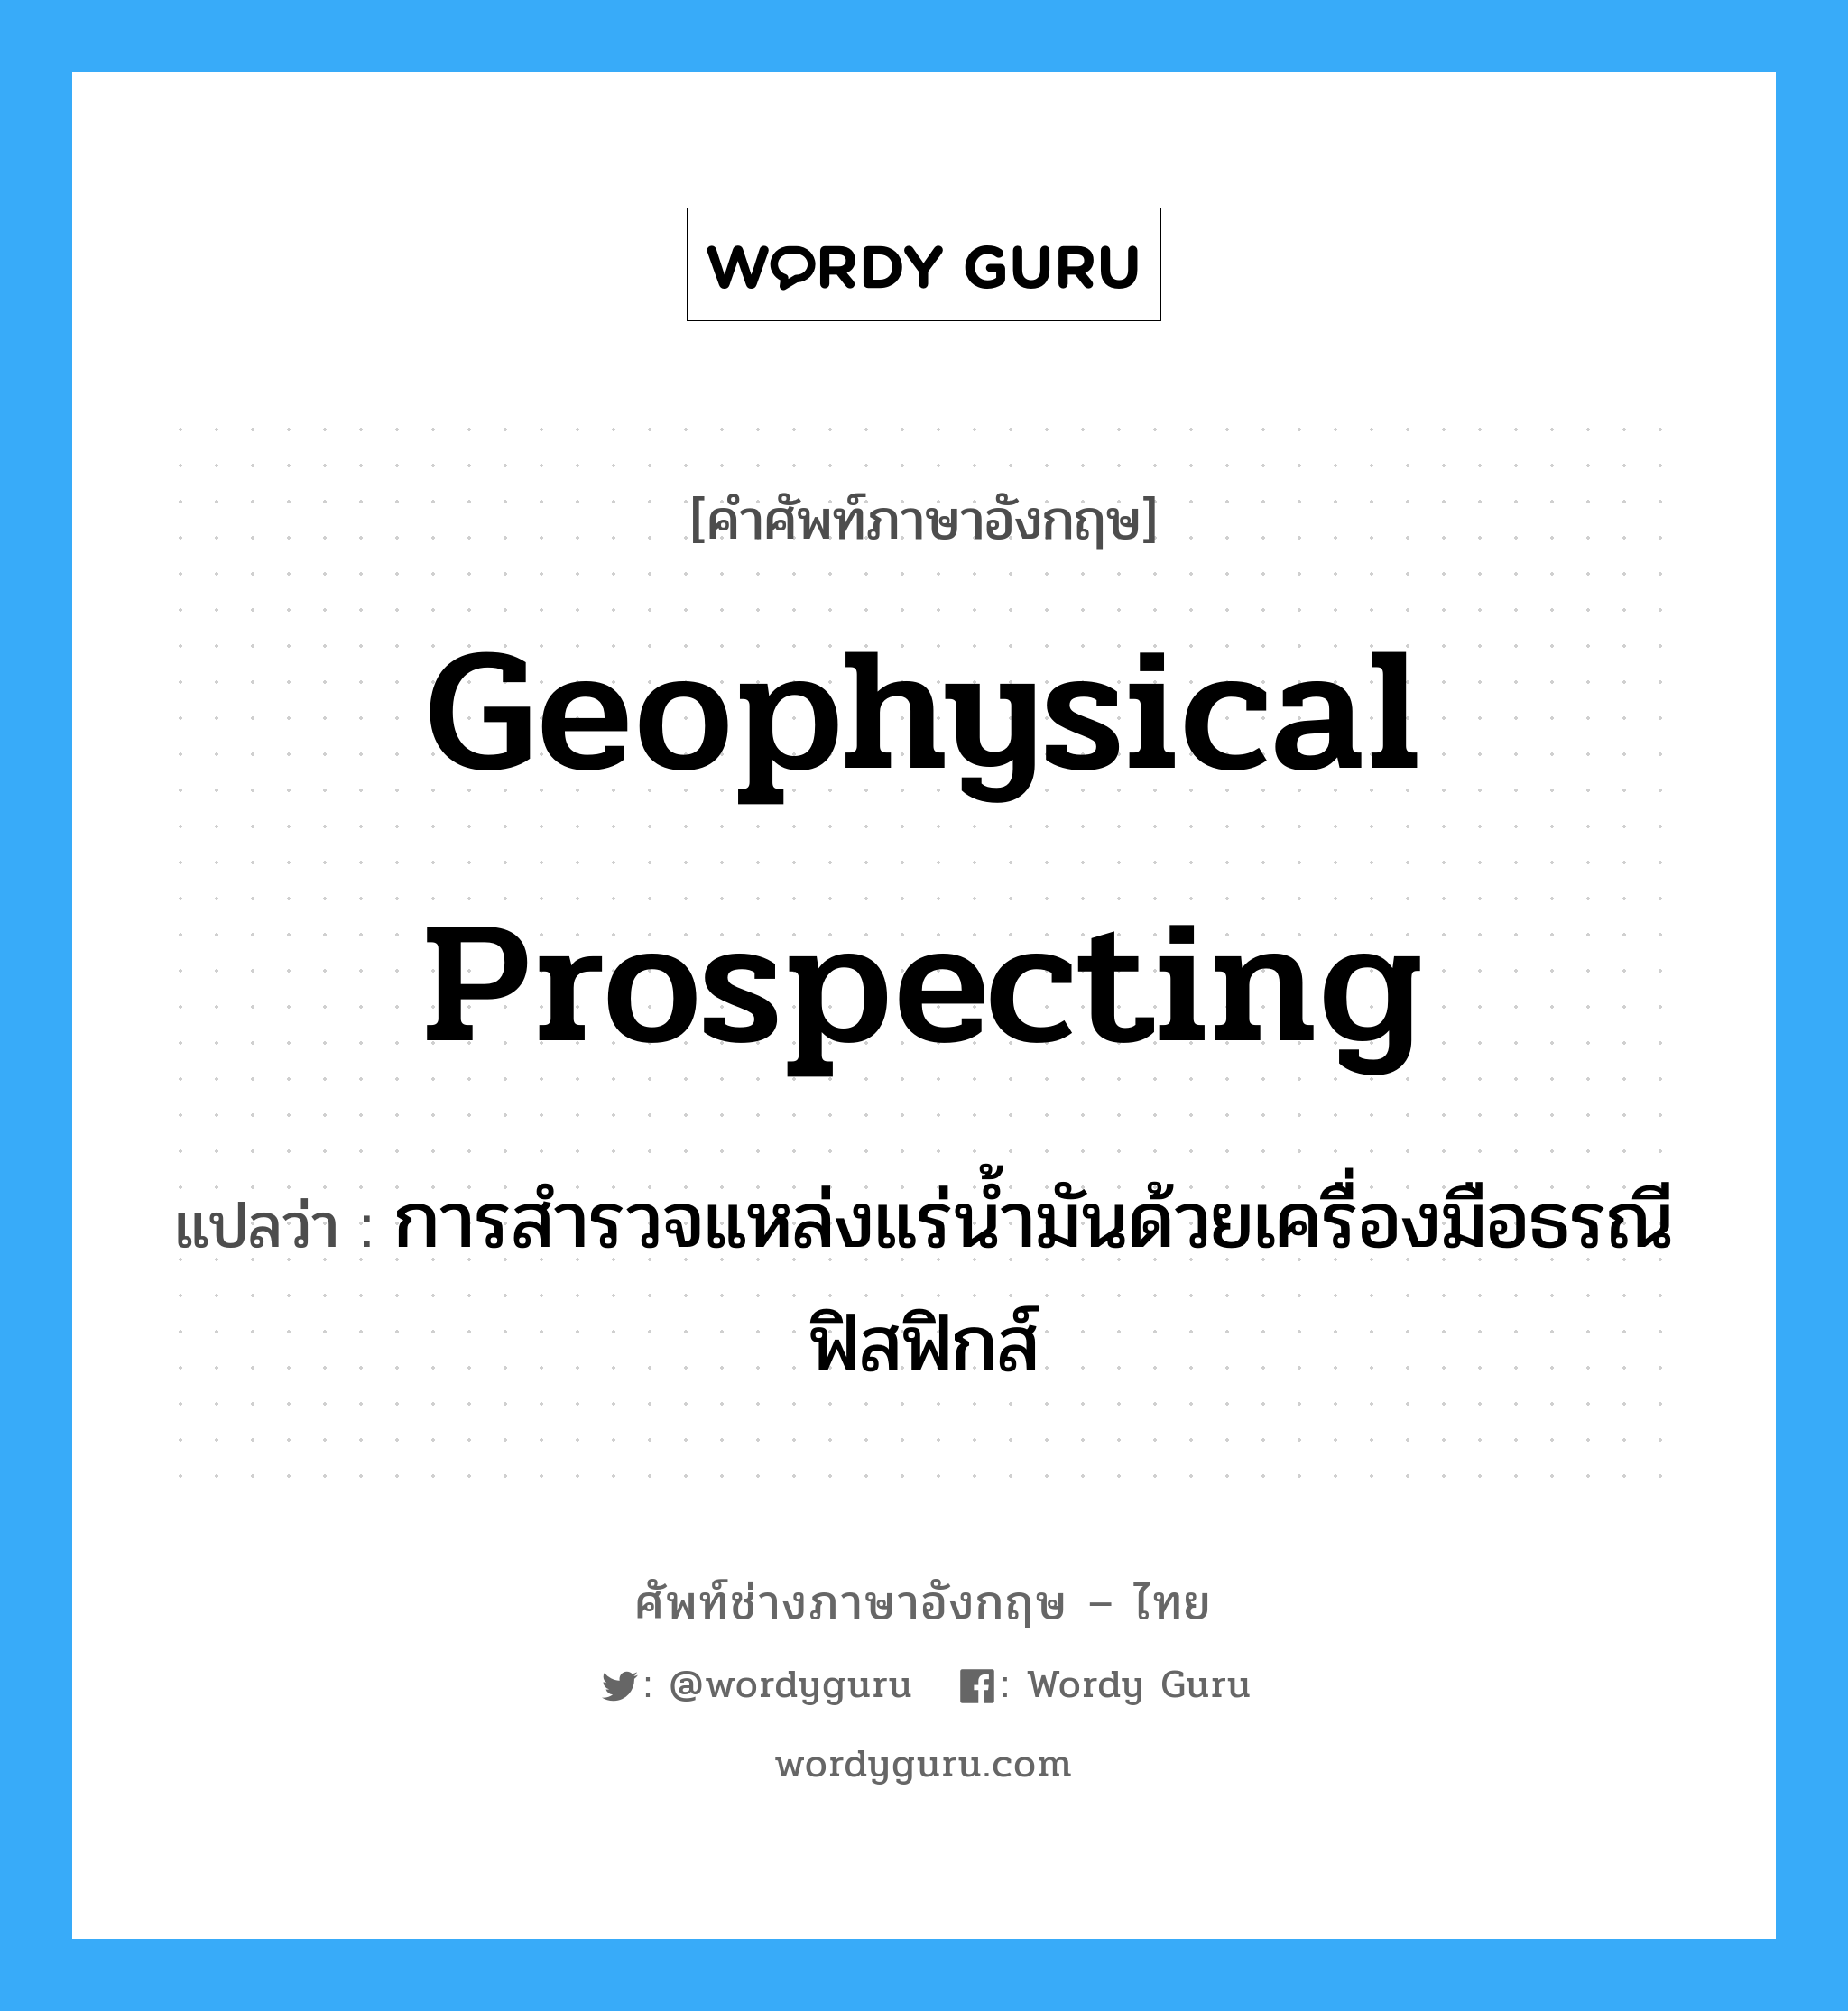 geophysical prospecting แปลว่า?, คำศัพท์ช่างภาษาอังกฤษ - ไทย geophysical prospecting คำศัพท์ภาษาอังกฤษ geophysical prospecting แปลว่า การสำรวจแหล่งแร่น้ำมันด้วยเครื่องมือธรณีฟิสฟิกส์